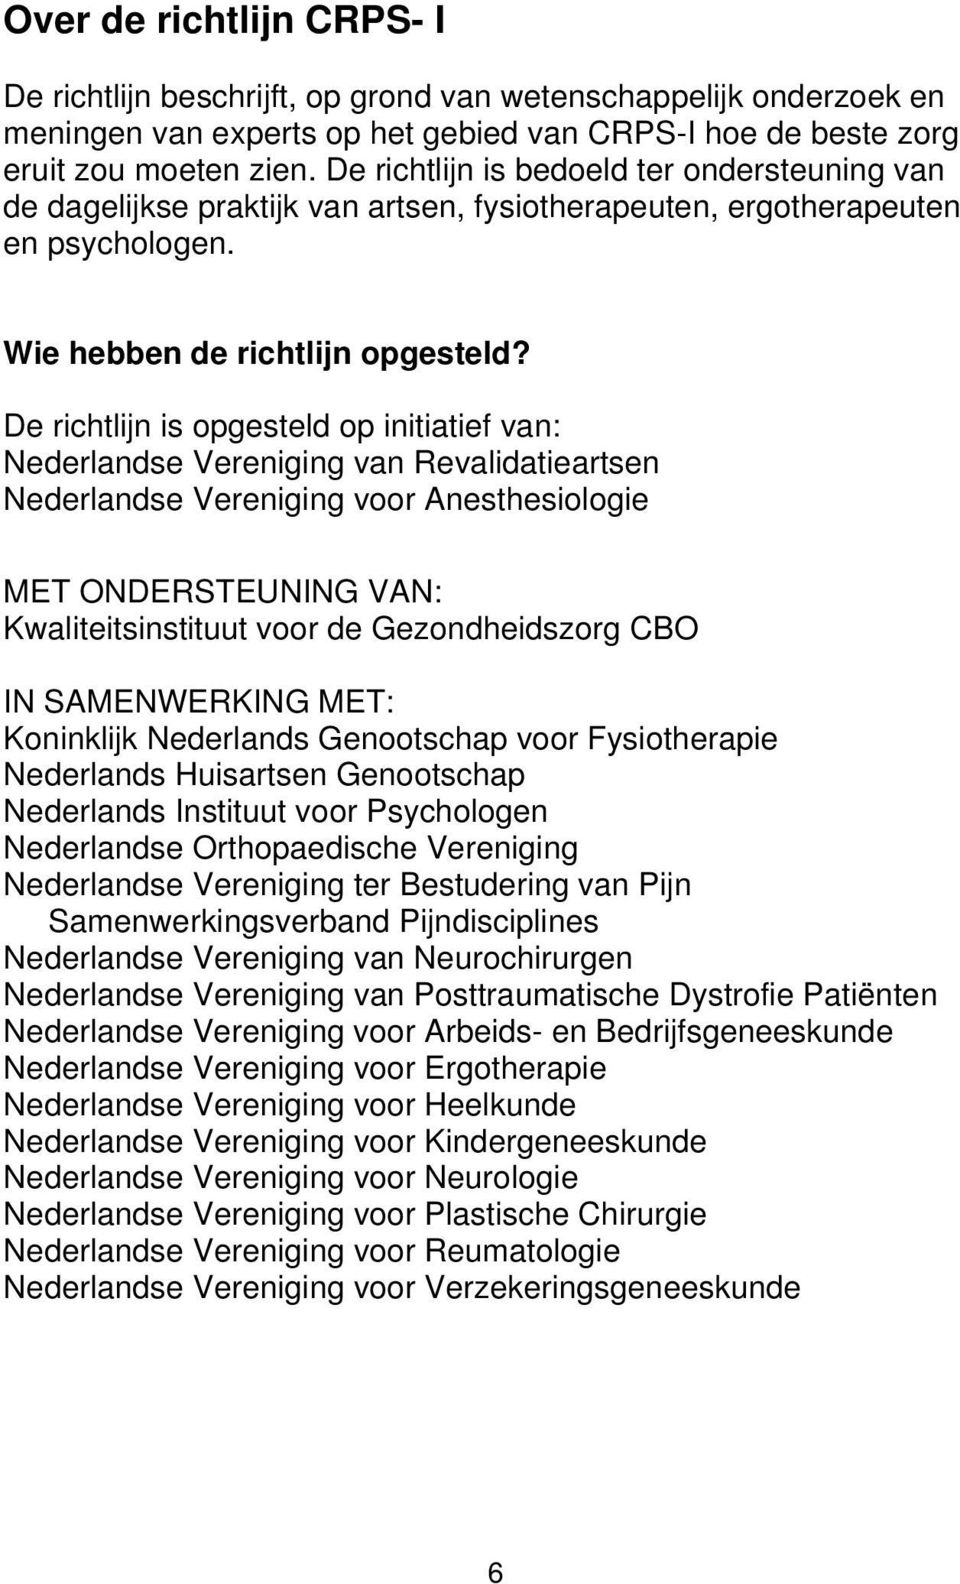 De richtlijn is opgesteld op initiatief van: Nederlandse Vereniging van Revalidatieartsen Nederlandse Vereniging voor Anesthesiologie MET ONDERSTEUNING VAN: Kwaliteitsinstituut voor de